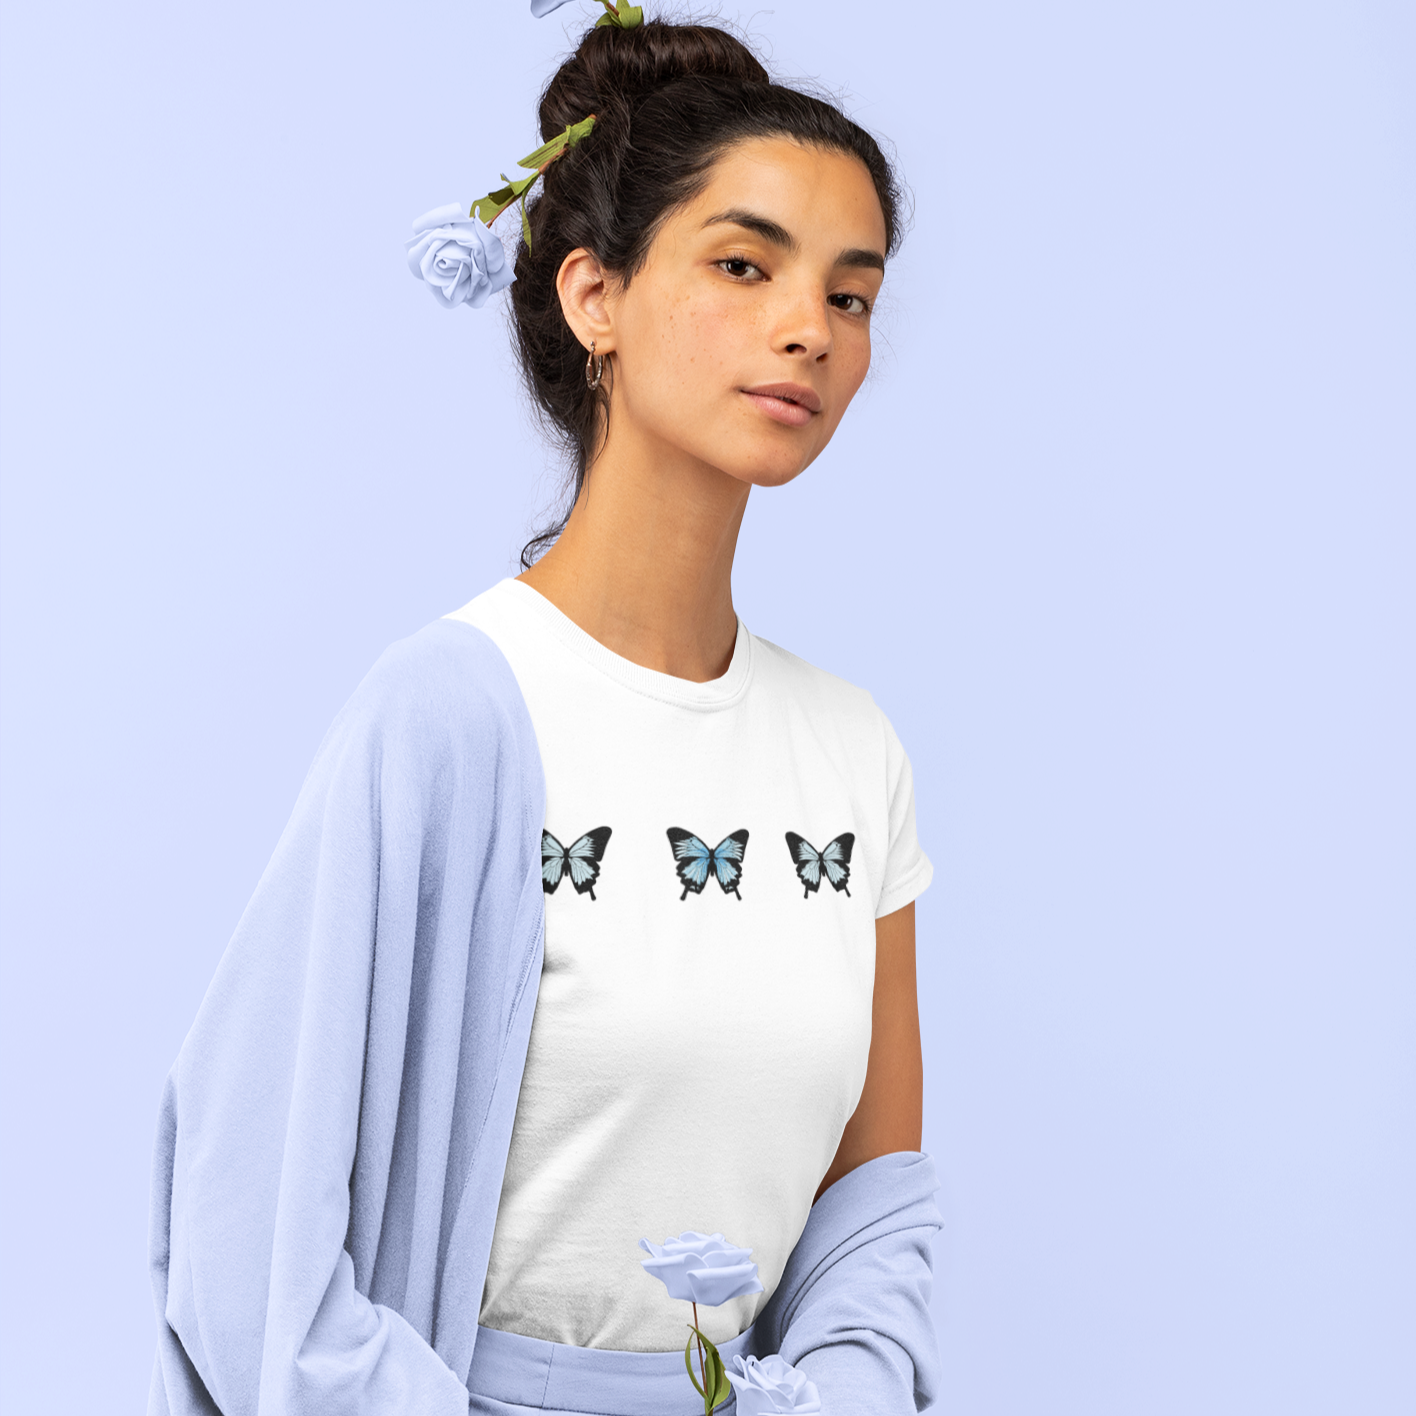 Butterfly Unisex T-Shirt